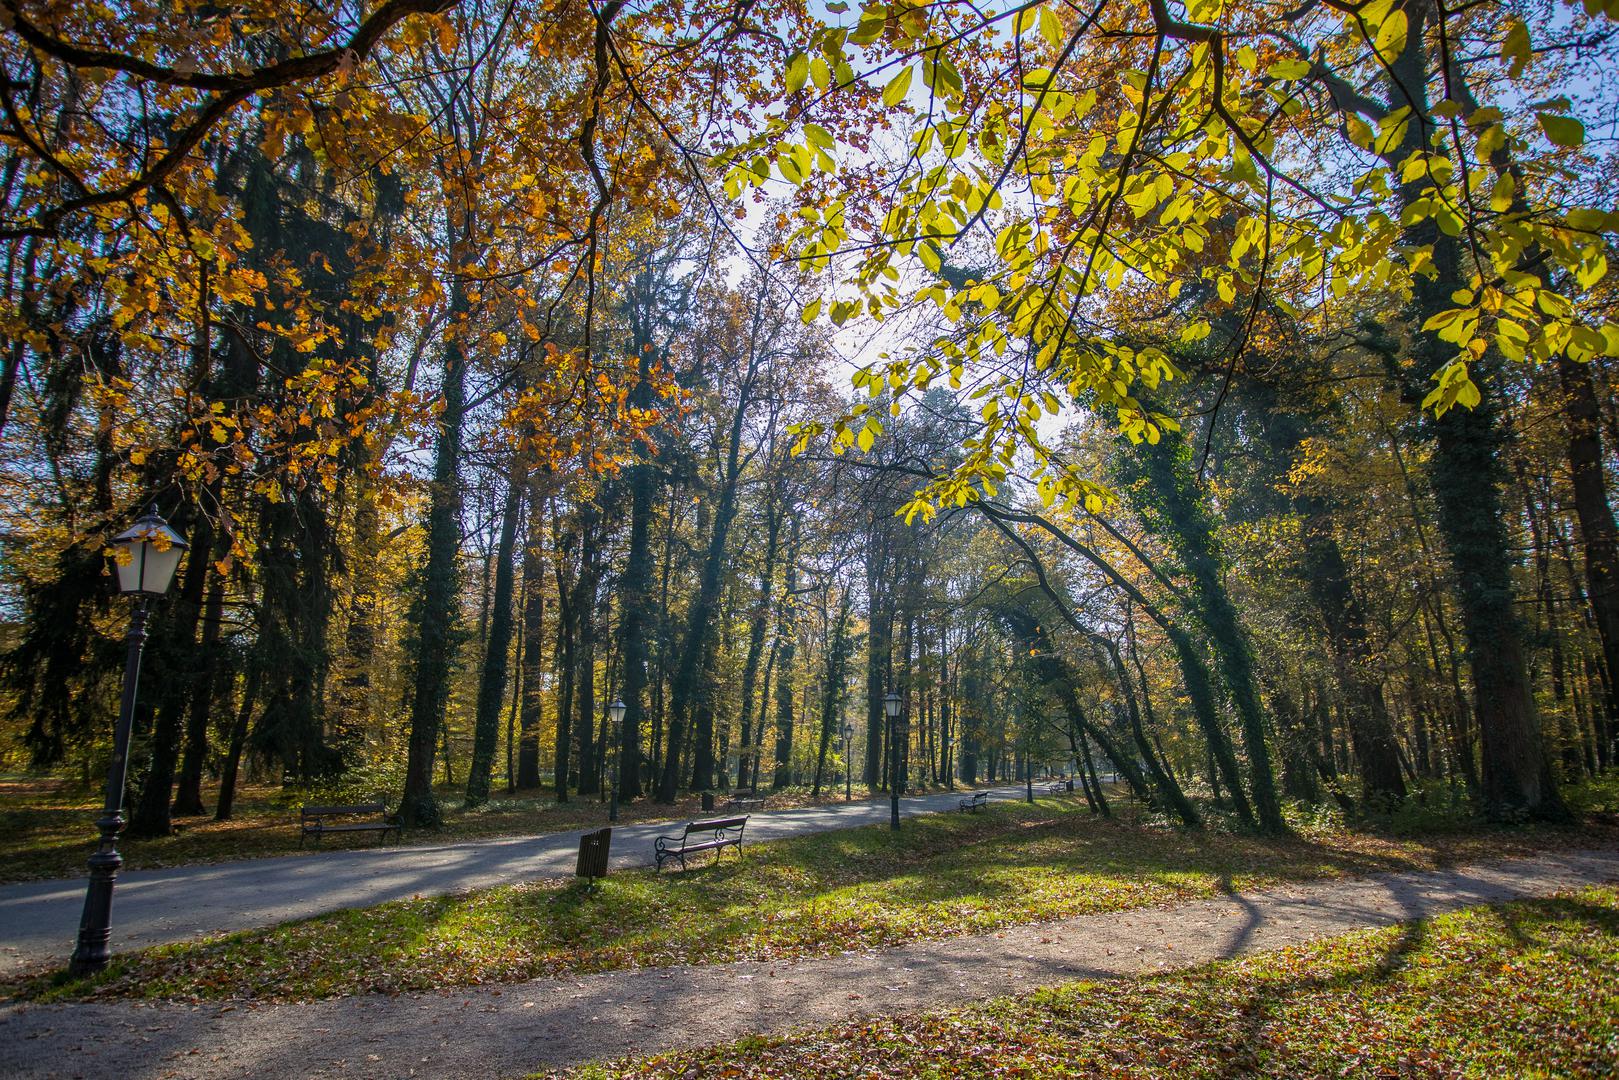 Maksimir - Park-šuma otvorena 1794. godine jedno je od obilježja Zagreba. Osim obilja zelenila, tu su i jezera, zoološki vrt... Zimi je Maksimir odlično mjesto za uživanje u snježnoj idili, ljeti zaklon od nesnosnih vrućina.